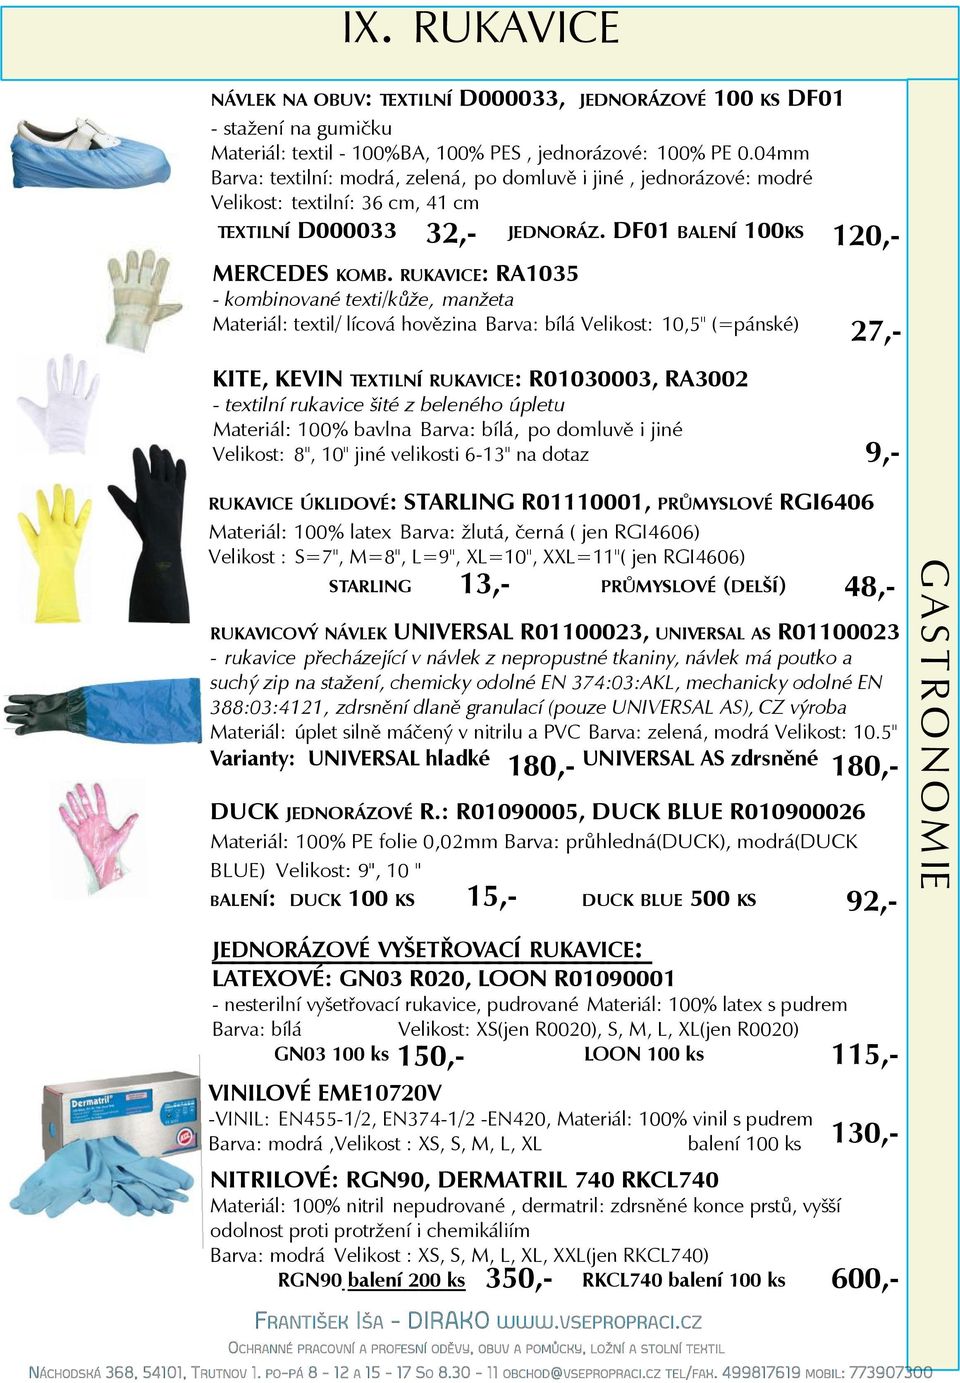 RUKAVICE: RA1035 - kombinované texti/kůže, manžeta Materiál: textil/ lícová hovězina Barva: bílá Velikost: 10,5" (=pánské) KITE, KEVIN TEXTILNÍ RUKAVICE: R01030003, RA3002 - textilní rukavice šité z